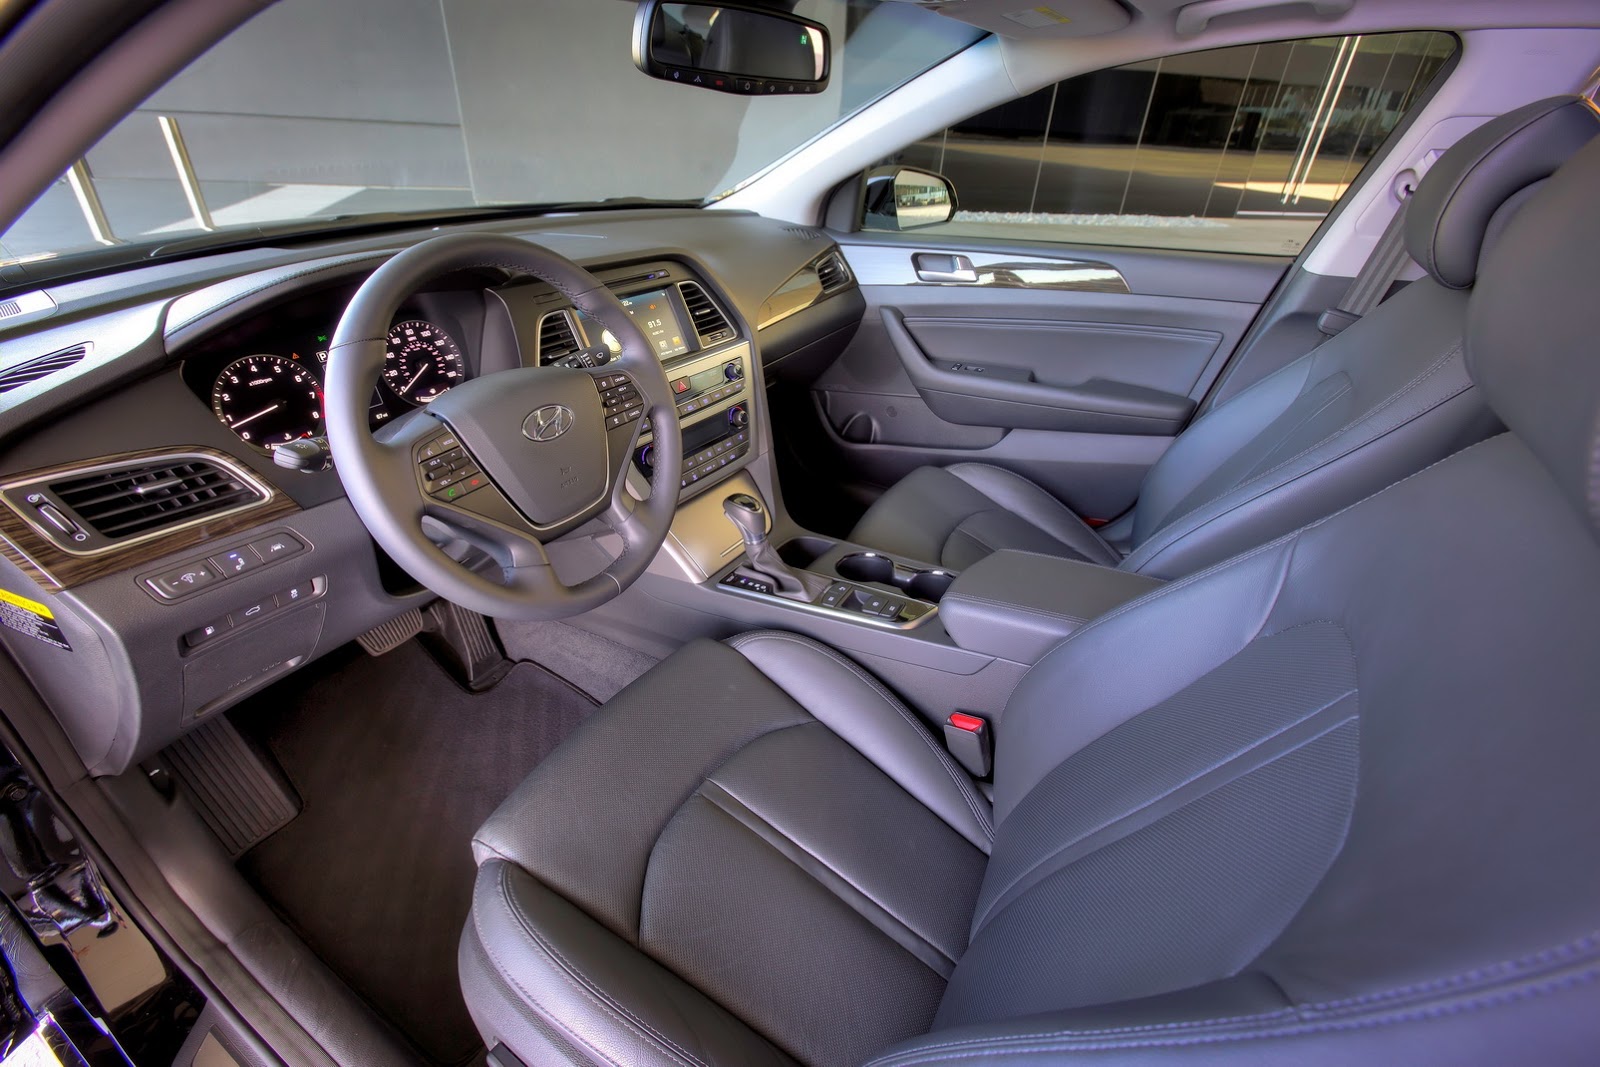 
Trong số những trang thiết bị tiêu chuẩn của Hyundai Sonata 2017 có cả hệ thống kiểm soát ổn định thân xe, cân bằng điện tử, kiểm soát lực bám đường, 7 túi khí, phanh đĩa trên 4 bánh, chống bó cứng phanh ABS, phân bổ lực phanh điện tử và trợ lực phanh.
